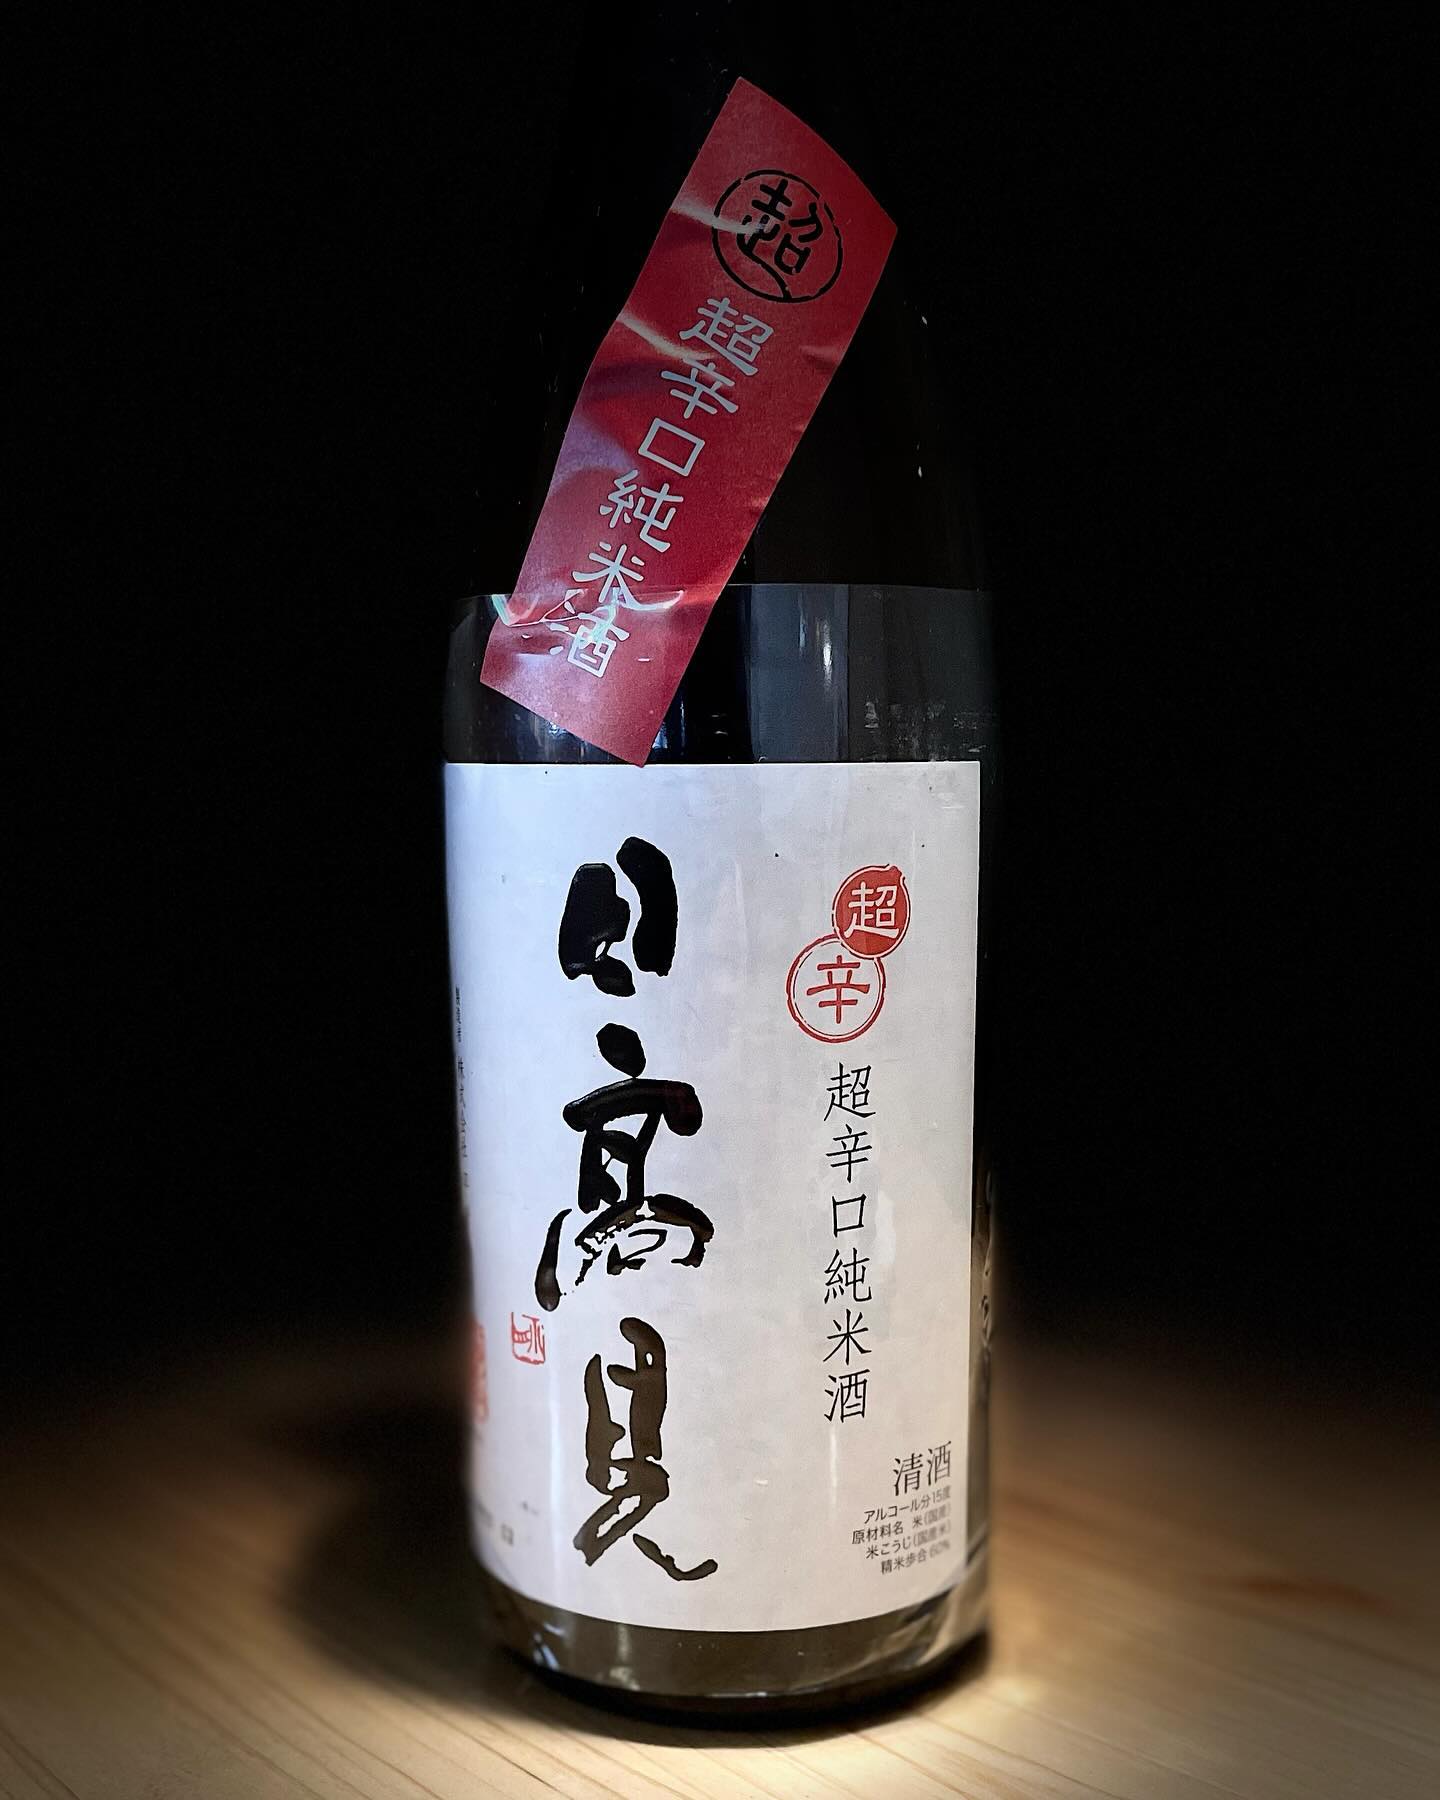 日本酒 ｢日髙見｣です！
口に入れた途端日本酒本来の味を楽しめます
おつまみと食べても他の味を邪魔しないのでオススメです。
#雨嫌い️